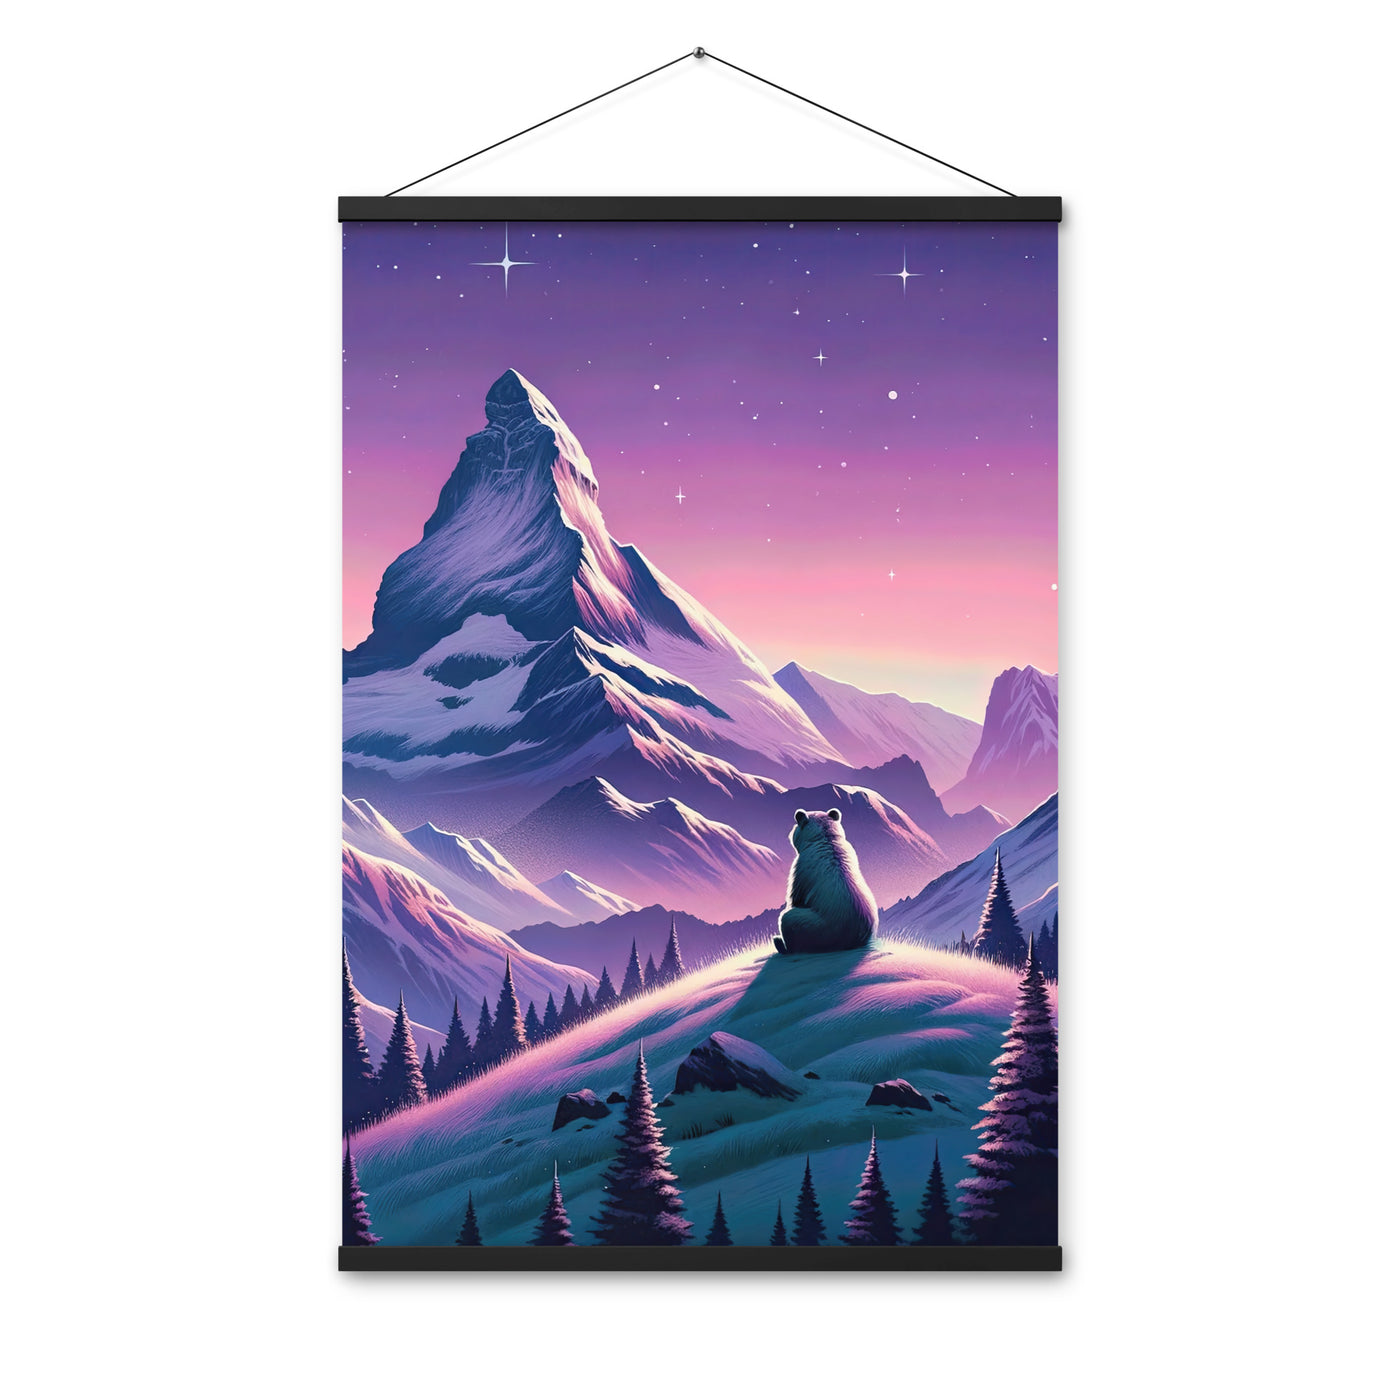 Bezaubernder Alpenabend mit Bär, lavendel-rosafarbener Himmel (AN) - Premium Poster mit Aufhängung xxx yyy zzz 61 x 91.4 cm